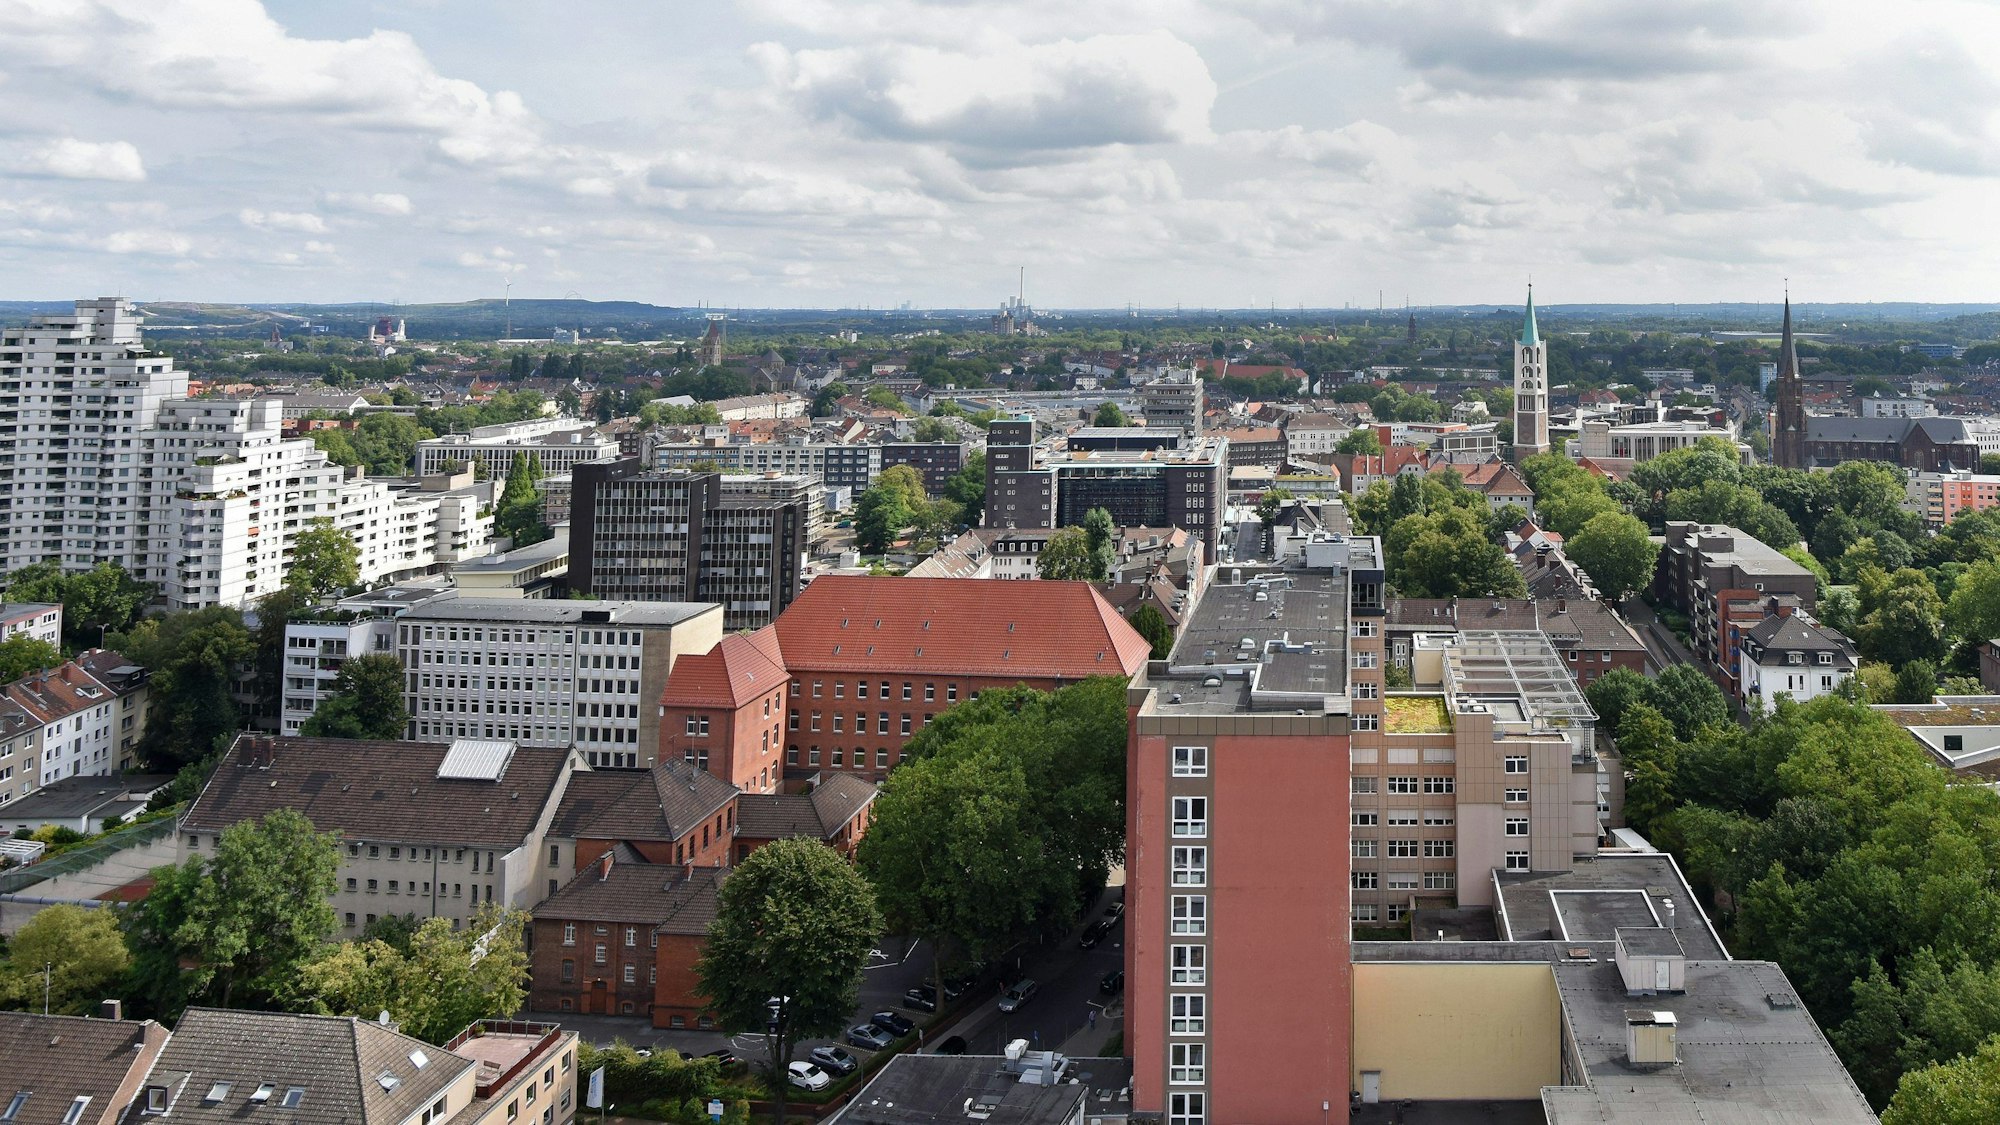 Überblick aus der Luft über die Stadt Gelsenkirchen.